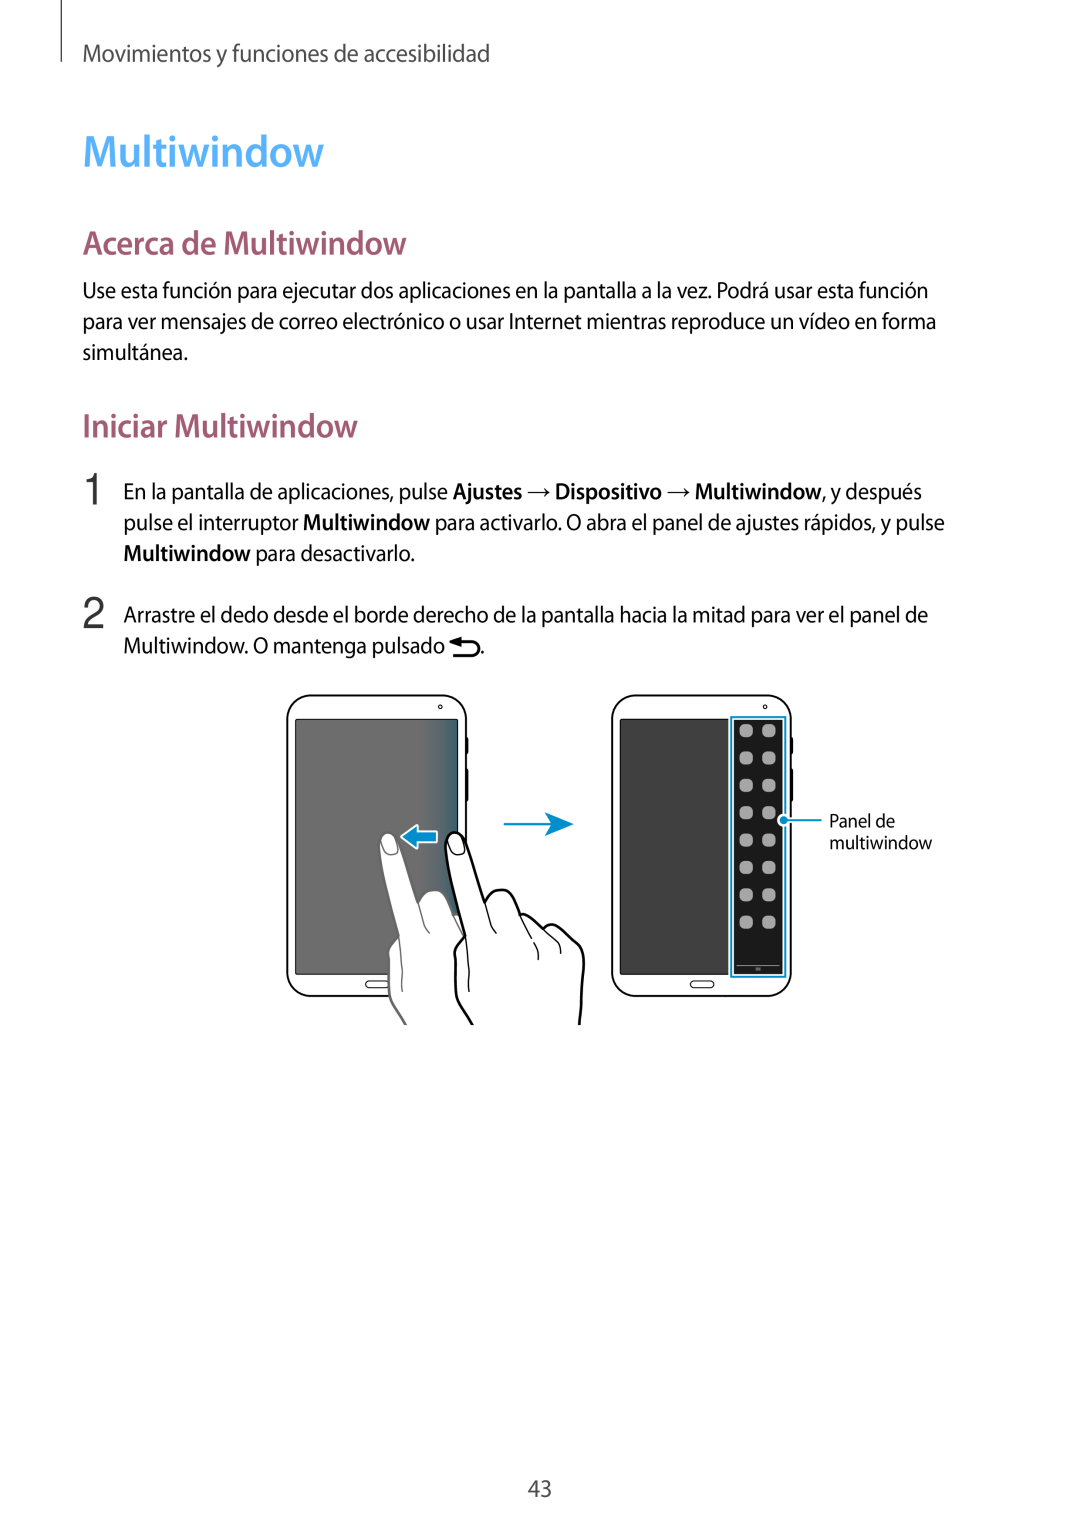 Samsung SM-T700NTSATPH manual Acerca de Multiwindow, Iniciar Multiwindow, Movimientos y funciones de accesibilidad 